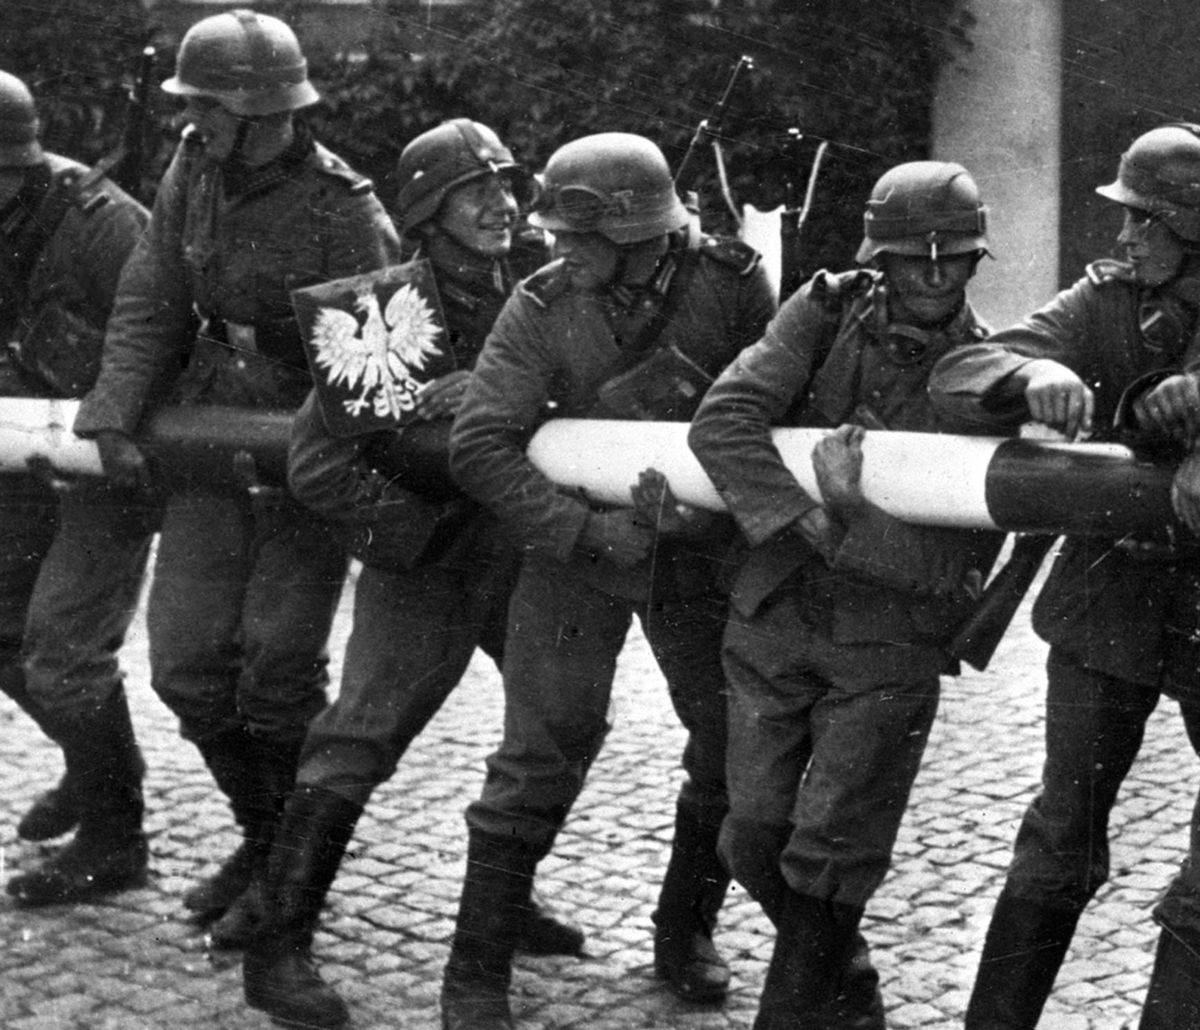 Niemiecki dziennik wraca do wojny. "Polacy stali się w ciągu jednej nocy łatwym łupem"